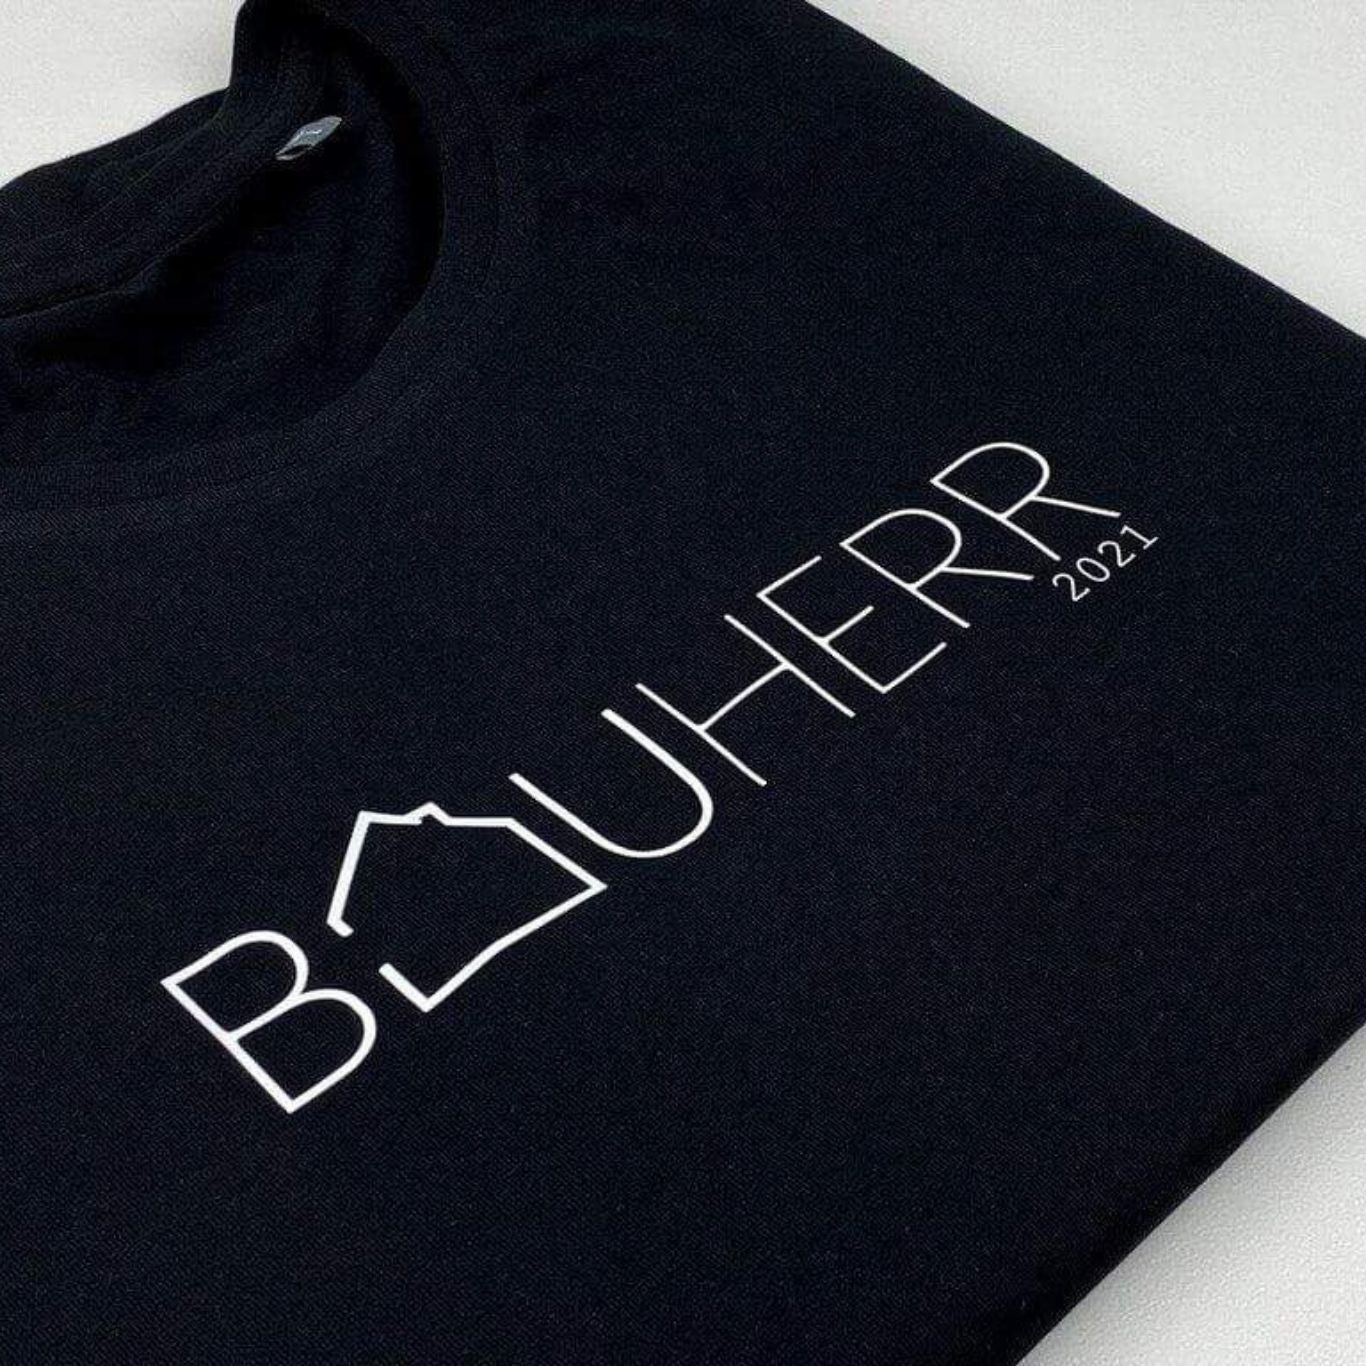 T-Shirt BAUHERR personalisiert das doppelte Plottchen®